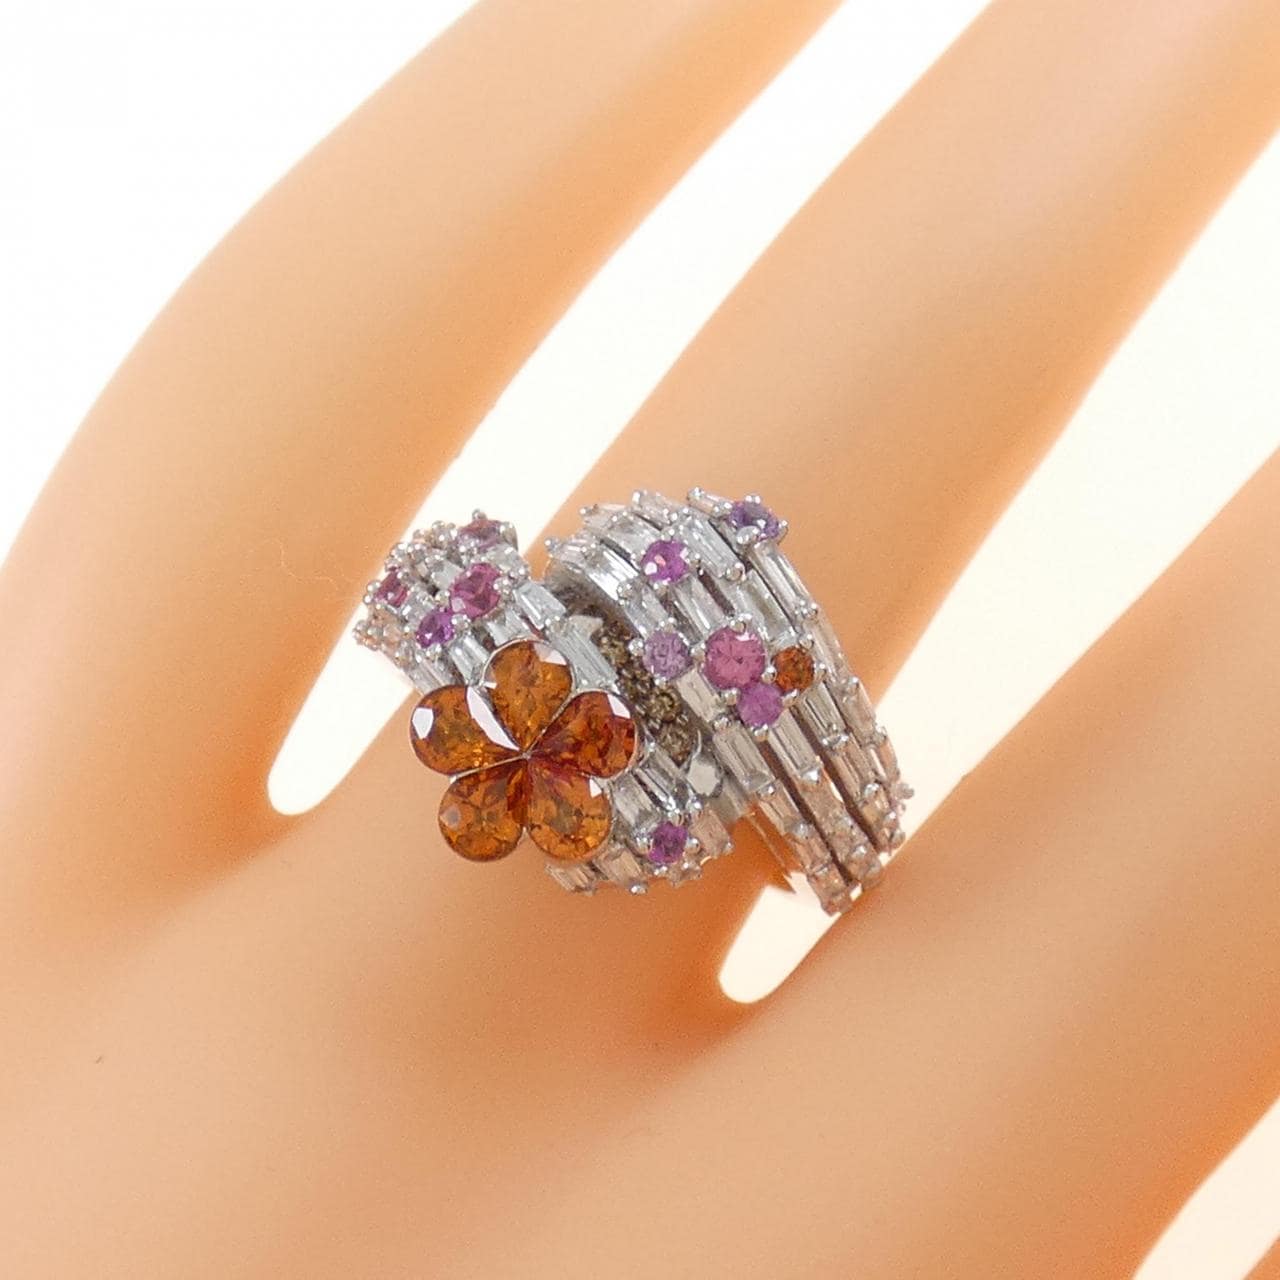 K18WG flower sapphire ring